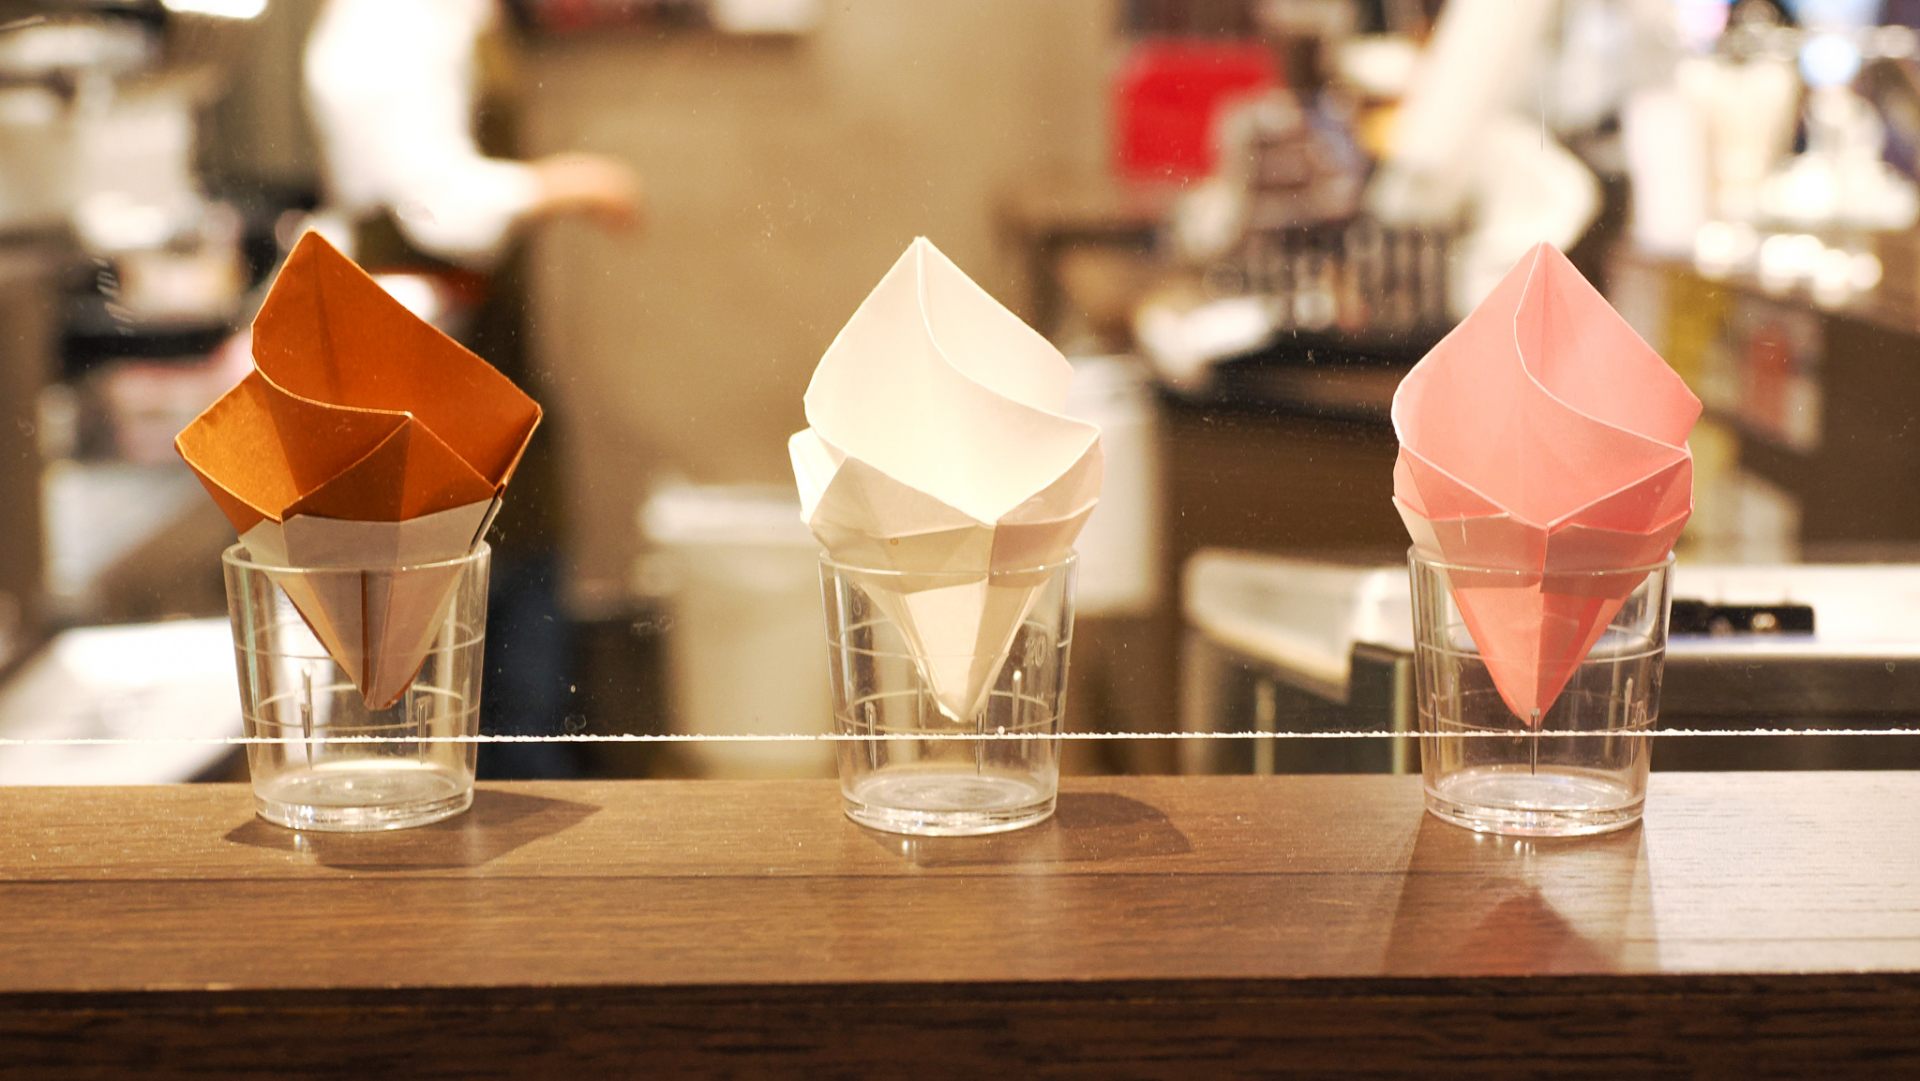 ソフトクリームのオブジェ/Origami ornaments of soft serve ice cream